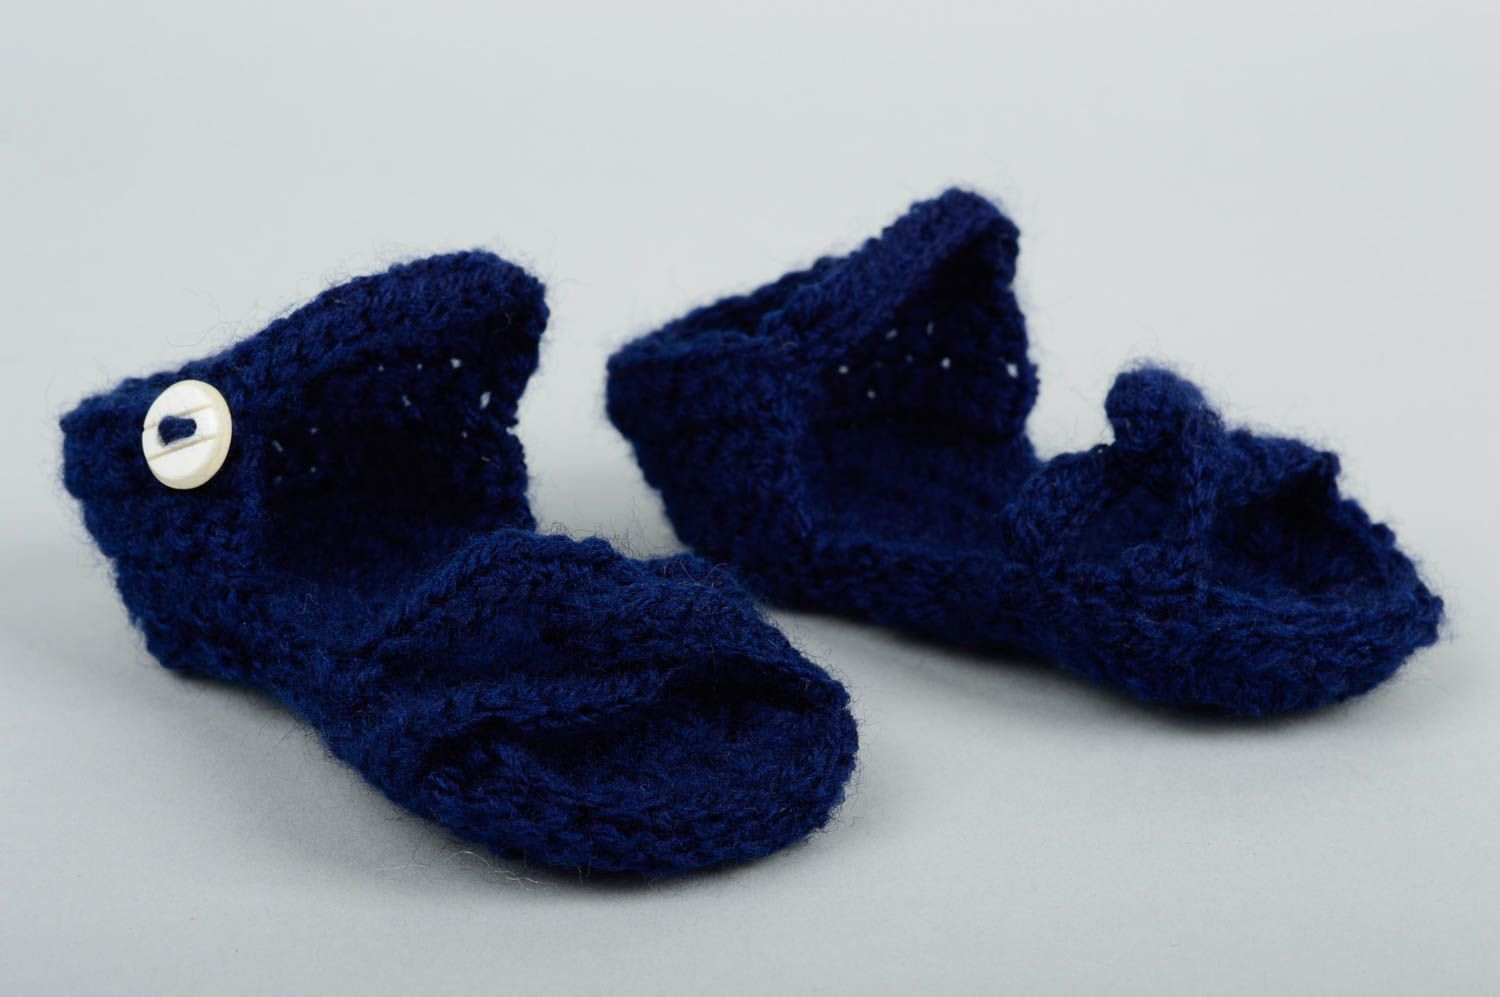 Cute handmade crochet baby booties warm baby booties designer baby accessories photo 3